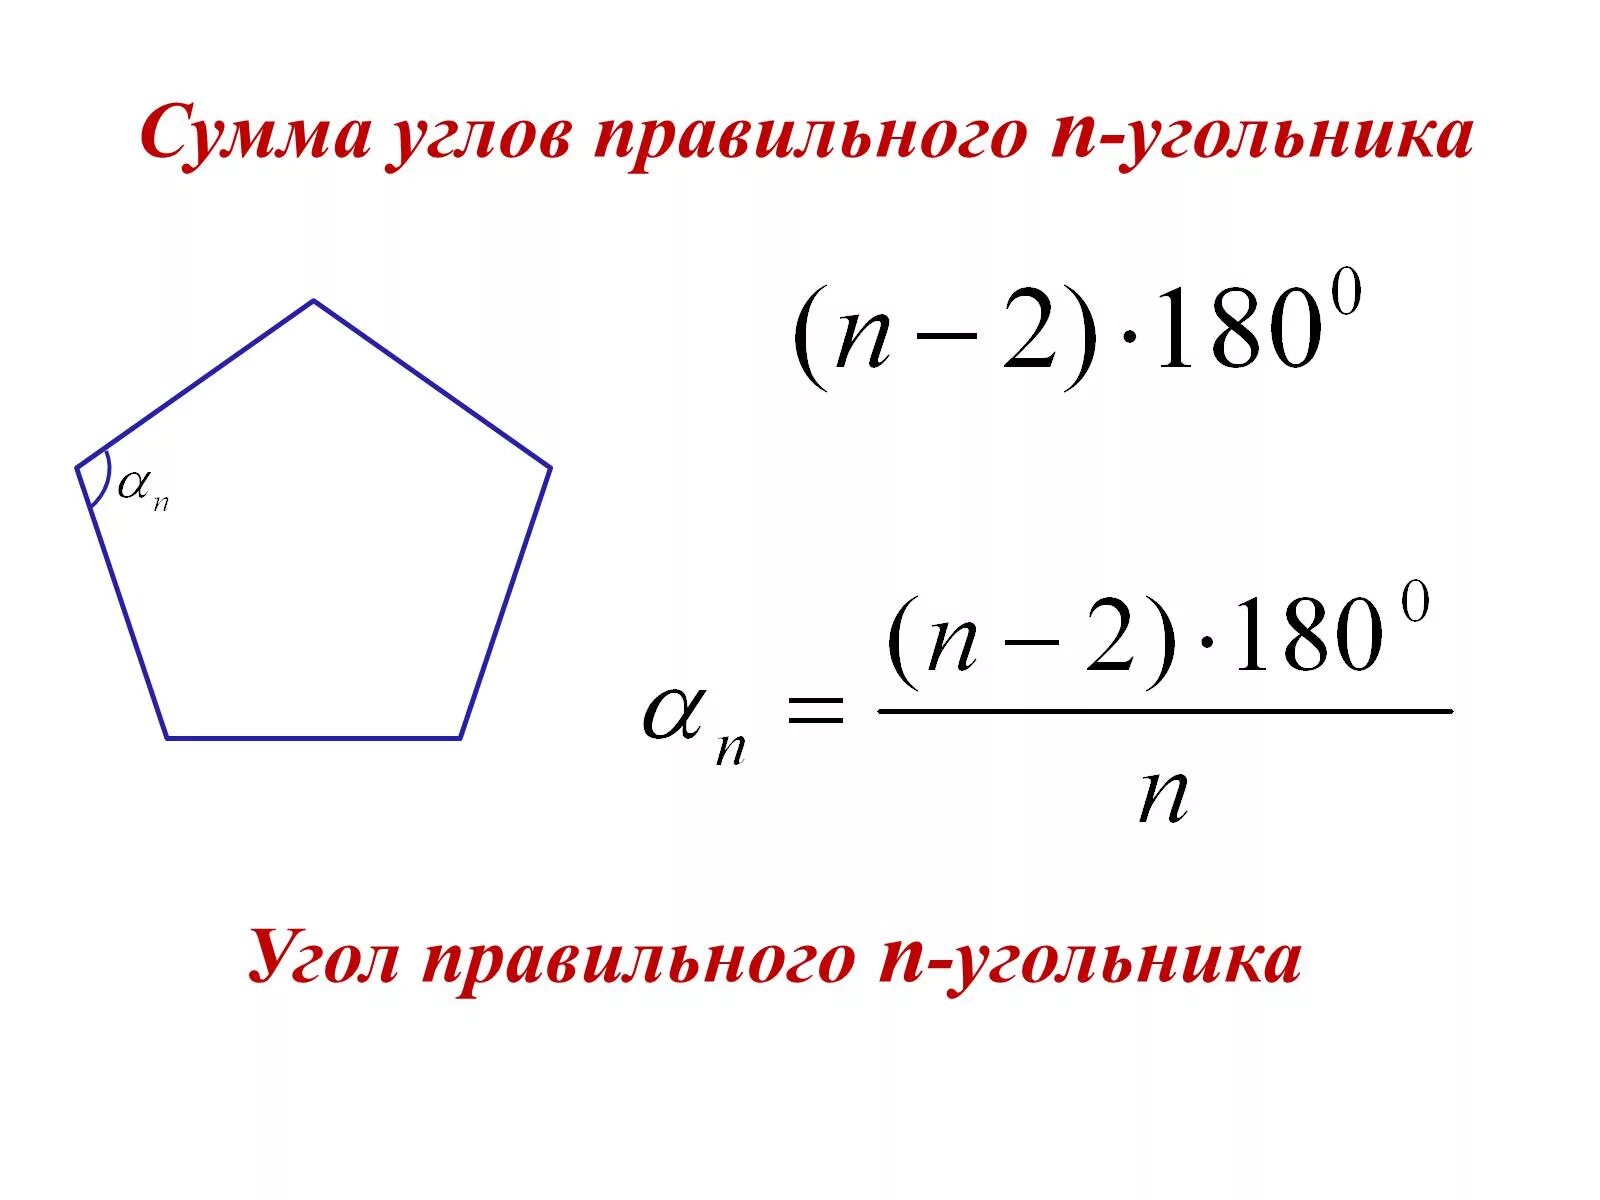 Угол между двумя соседними сторонами многоугольника. Формула угла правильного многоугольника. Формула для нахождения угла правильного многоугольника. Формула нахождения углов правильного n-угольника. Как найти угол многоугольника формула.